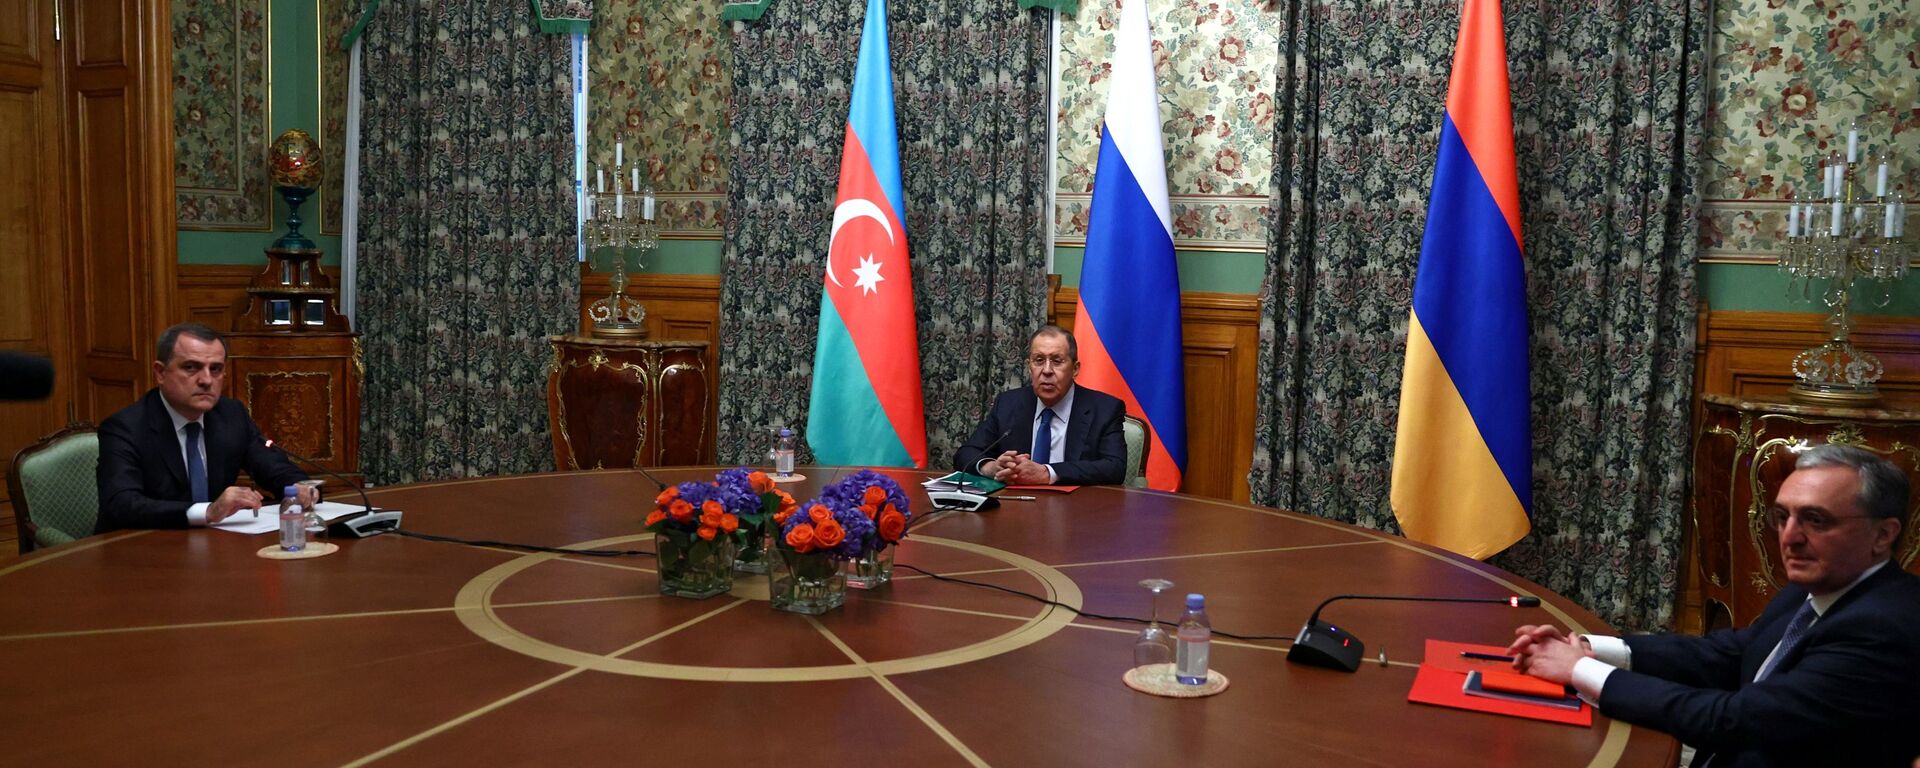 Las negociaciones entre los cancilleres de Rusia, Armenia y Azerbaiyán sobre Karabaj  - Sputnik Mundo, 1920, 27.09.2021